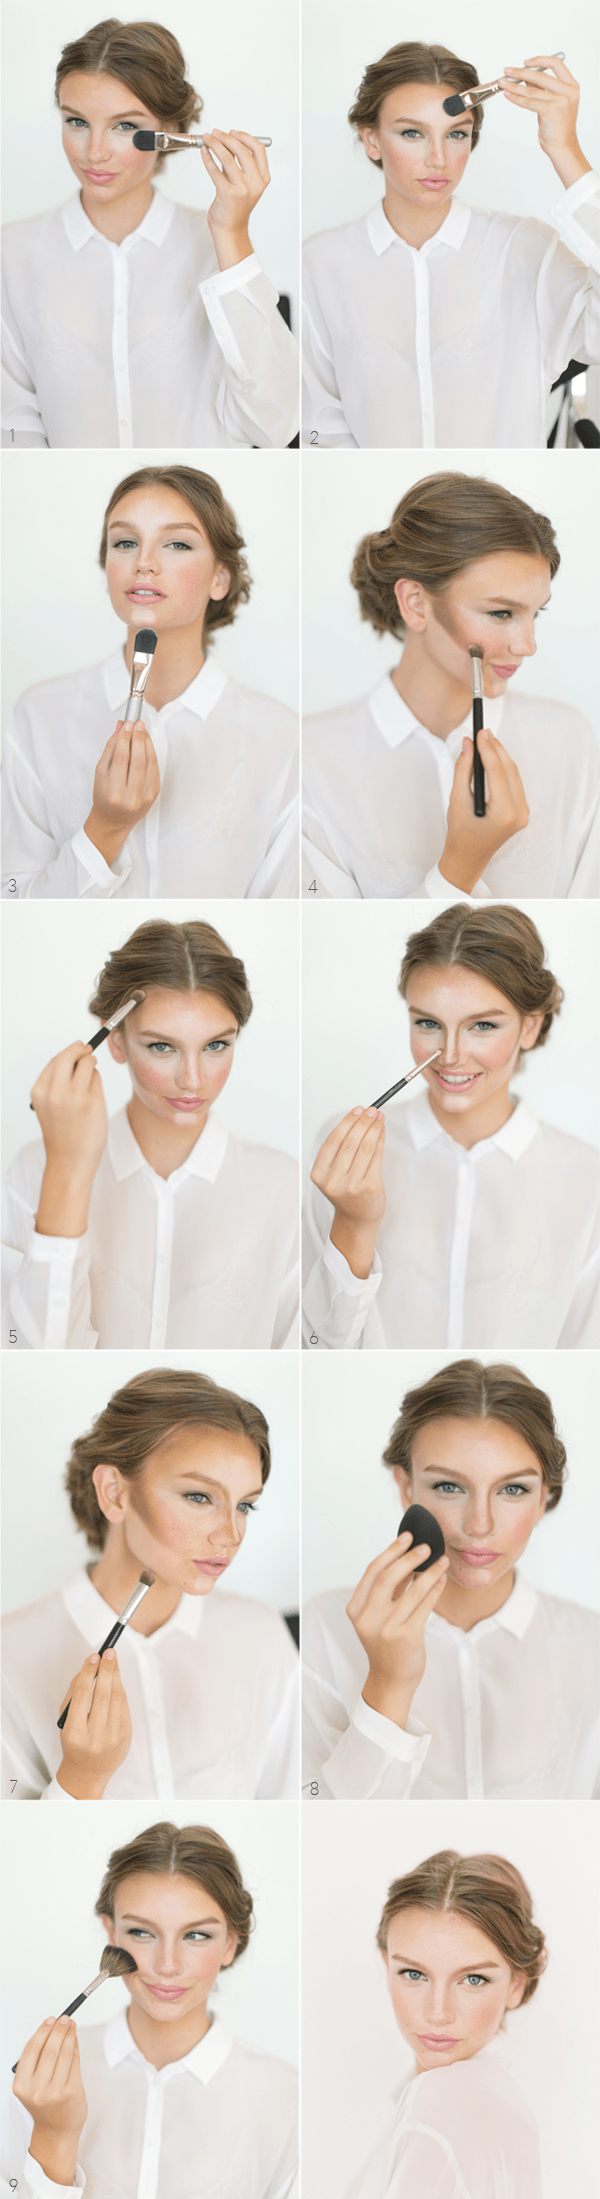 11 Fabulous Makeup Tips For Beautiful Natural Look